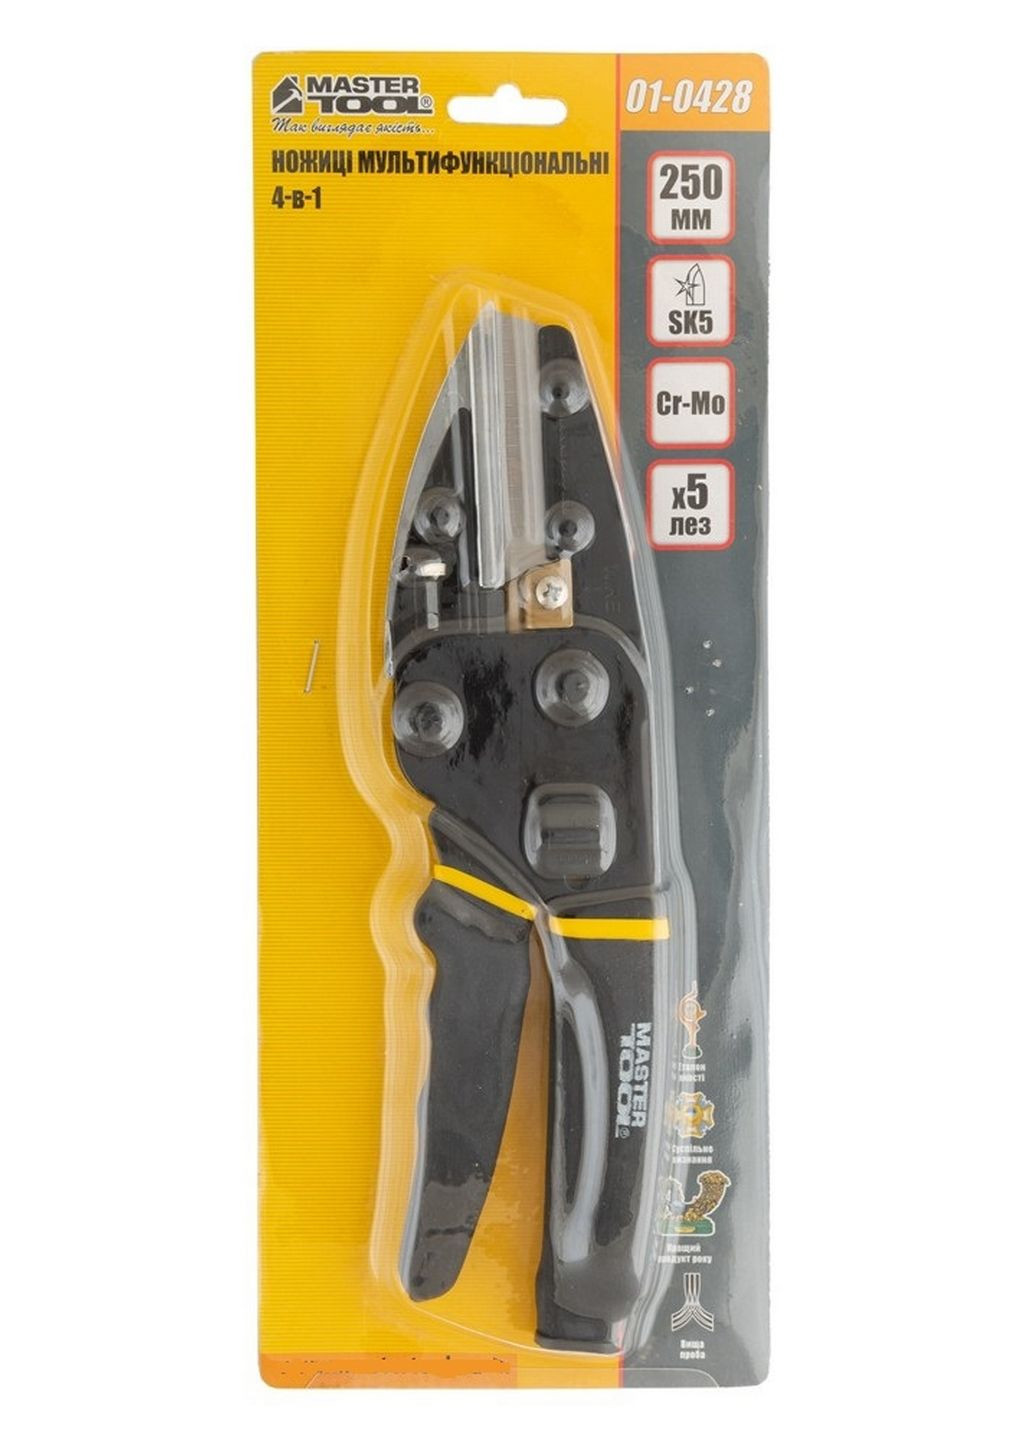 Ножницы мультифункциональные, 4-в-1 ножницы/секатор/кабелерез/нож, 250 мм Master Tool (288184105)